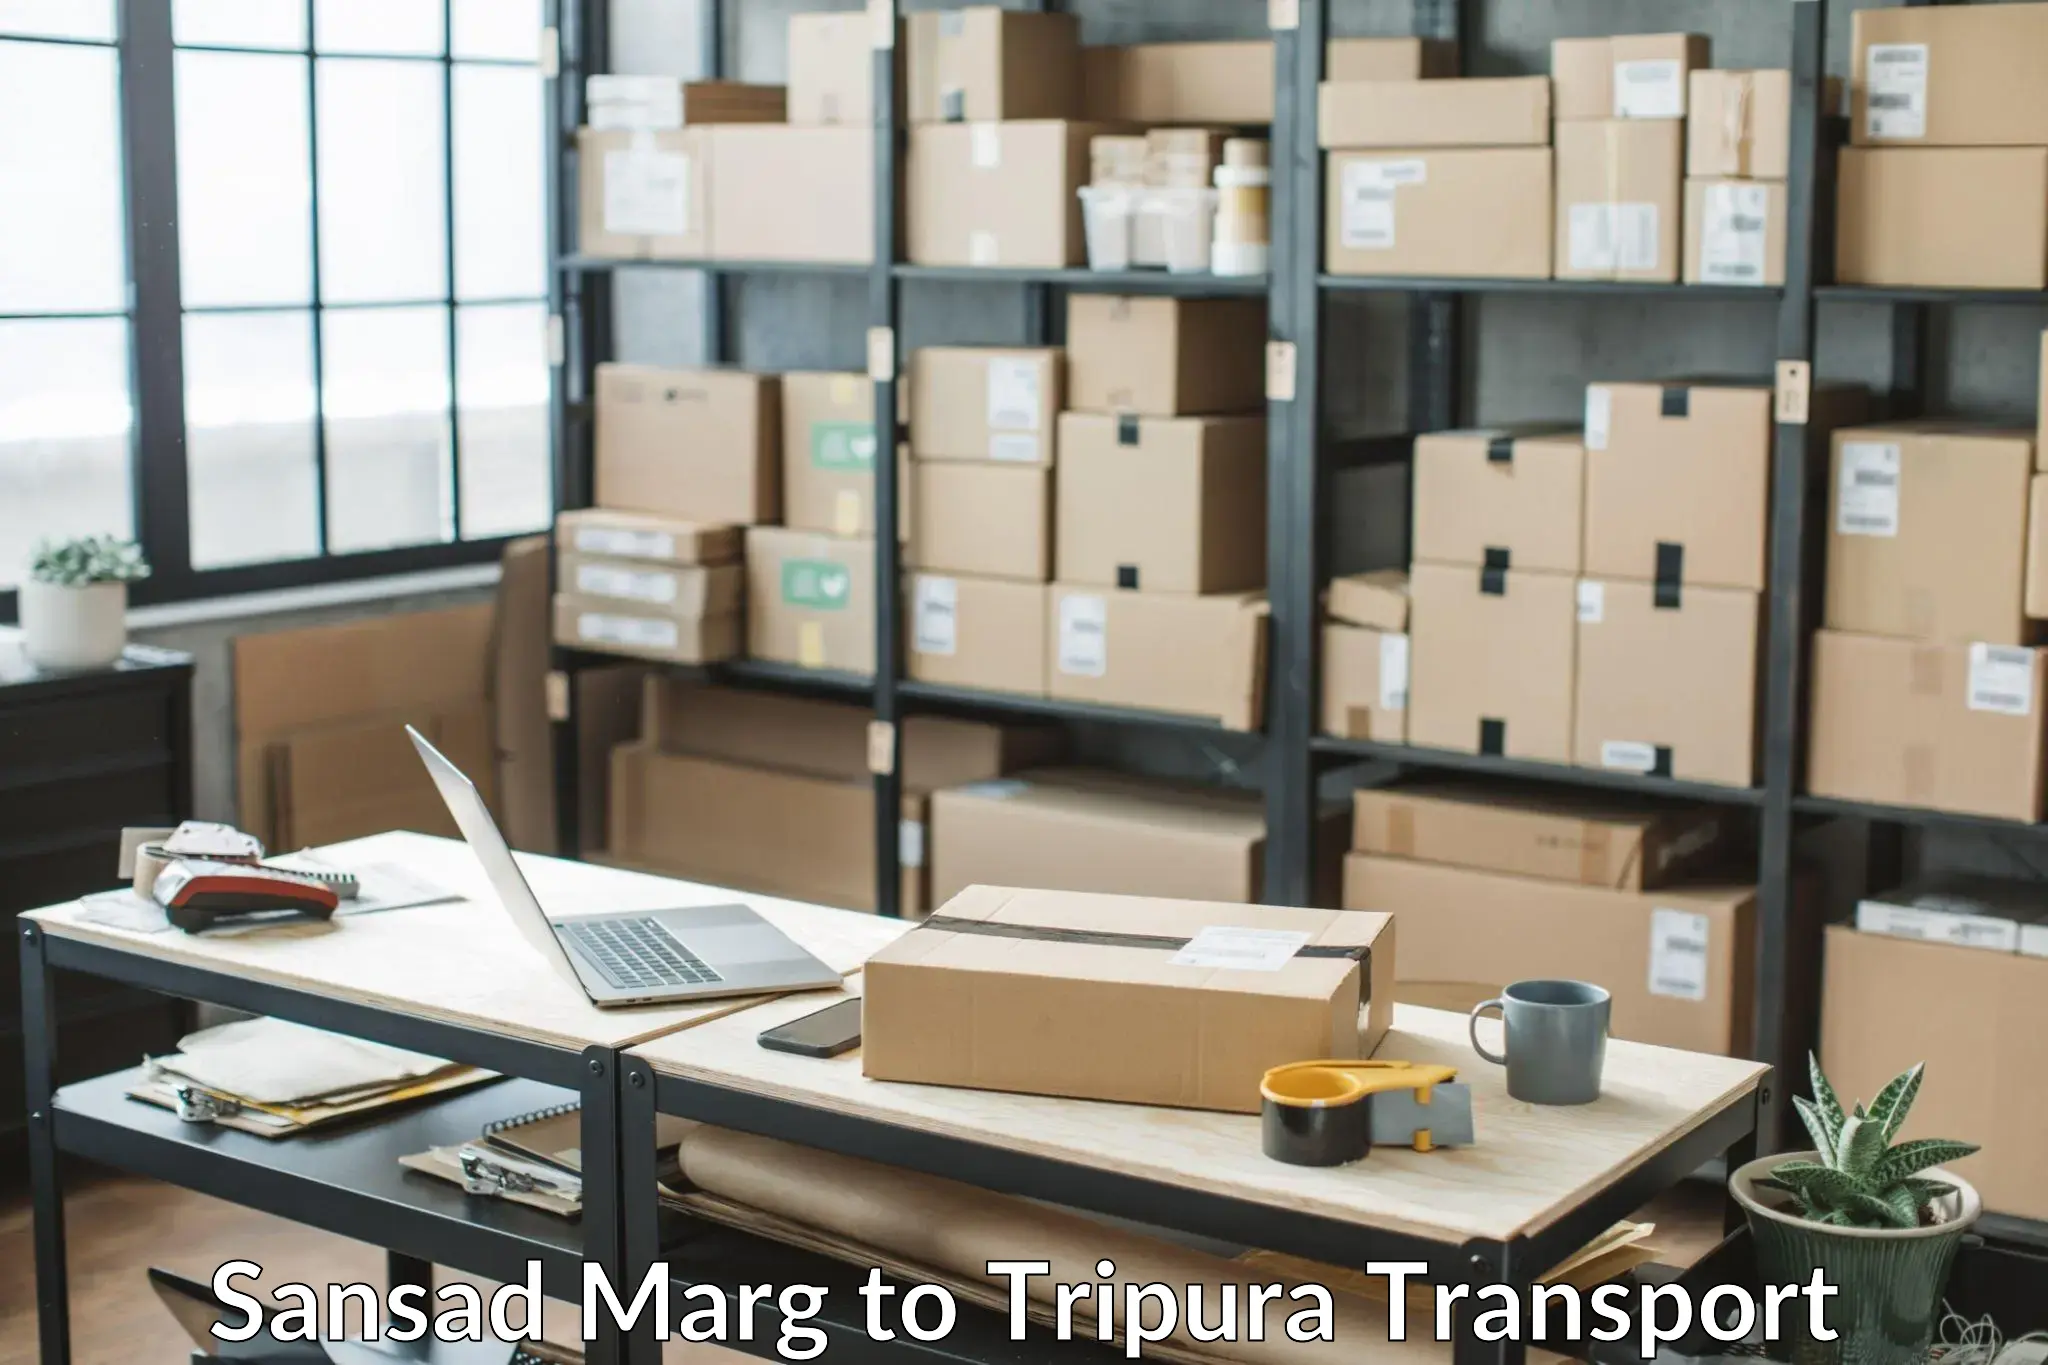 Commercial transport service Sansad Marg to Sonamura